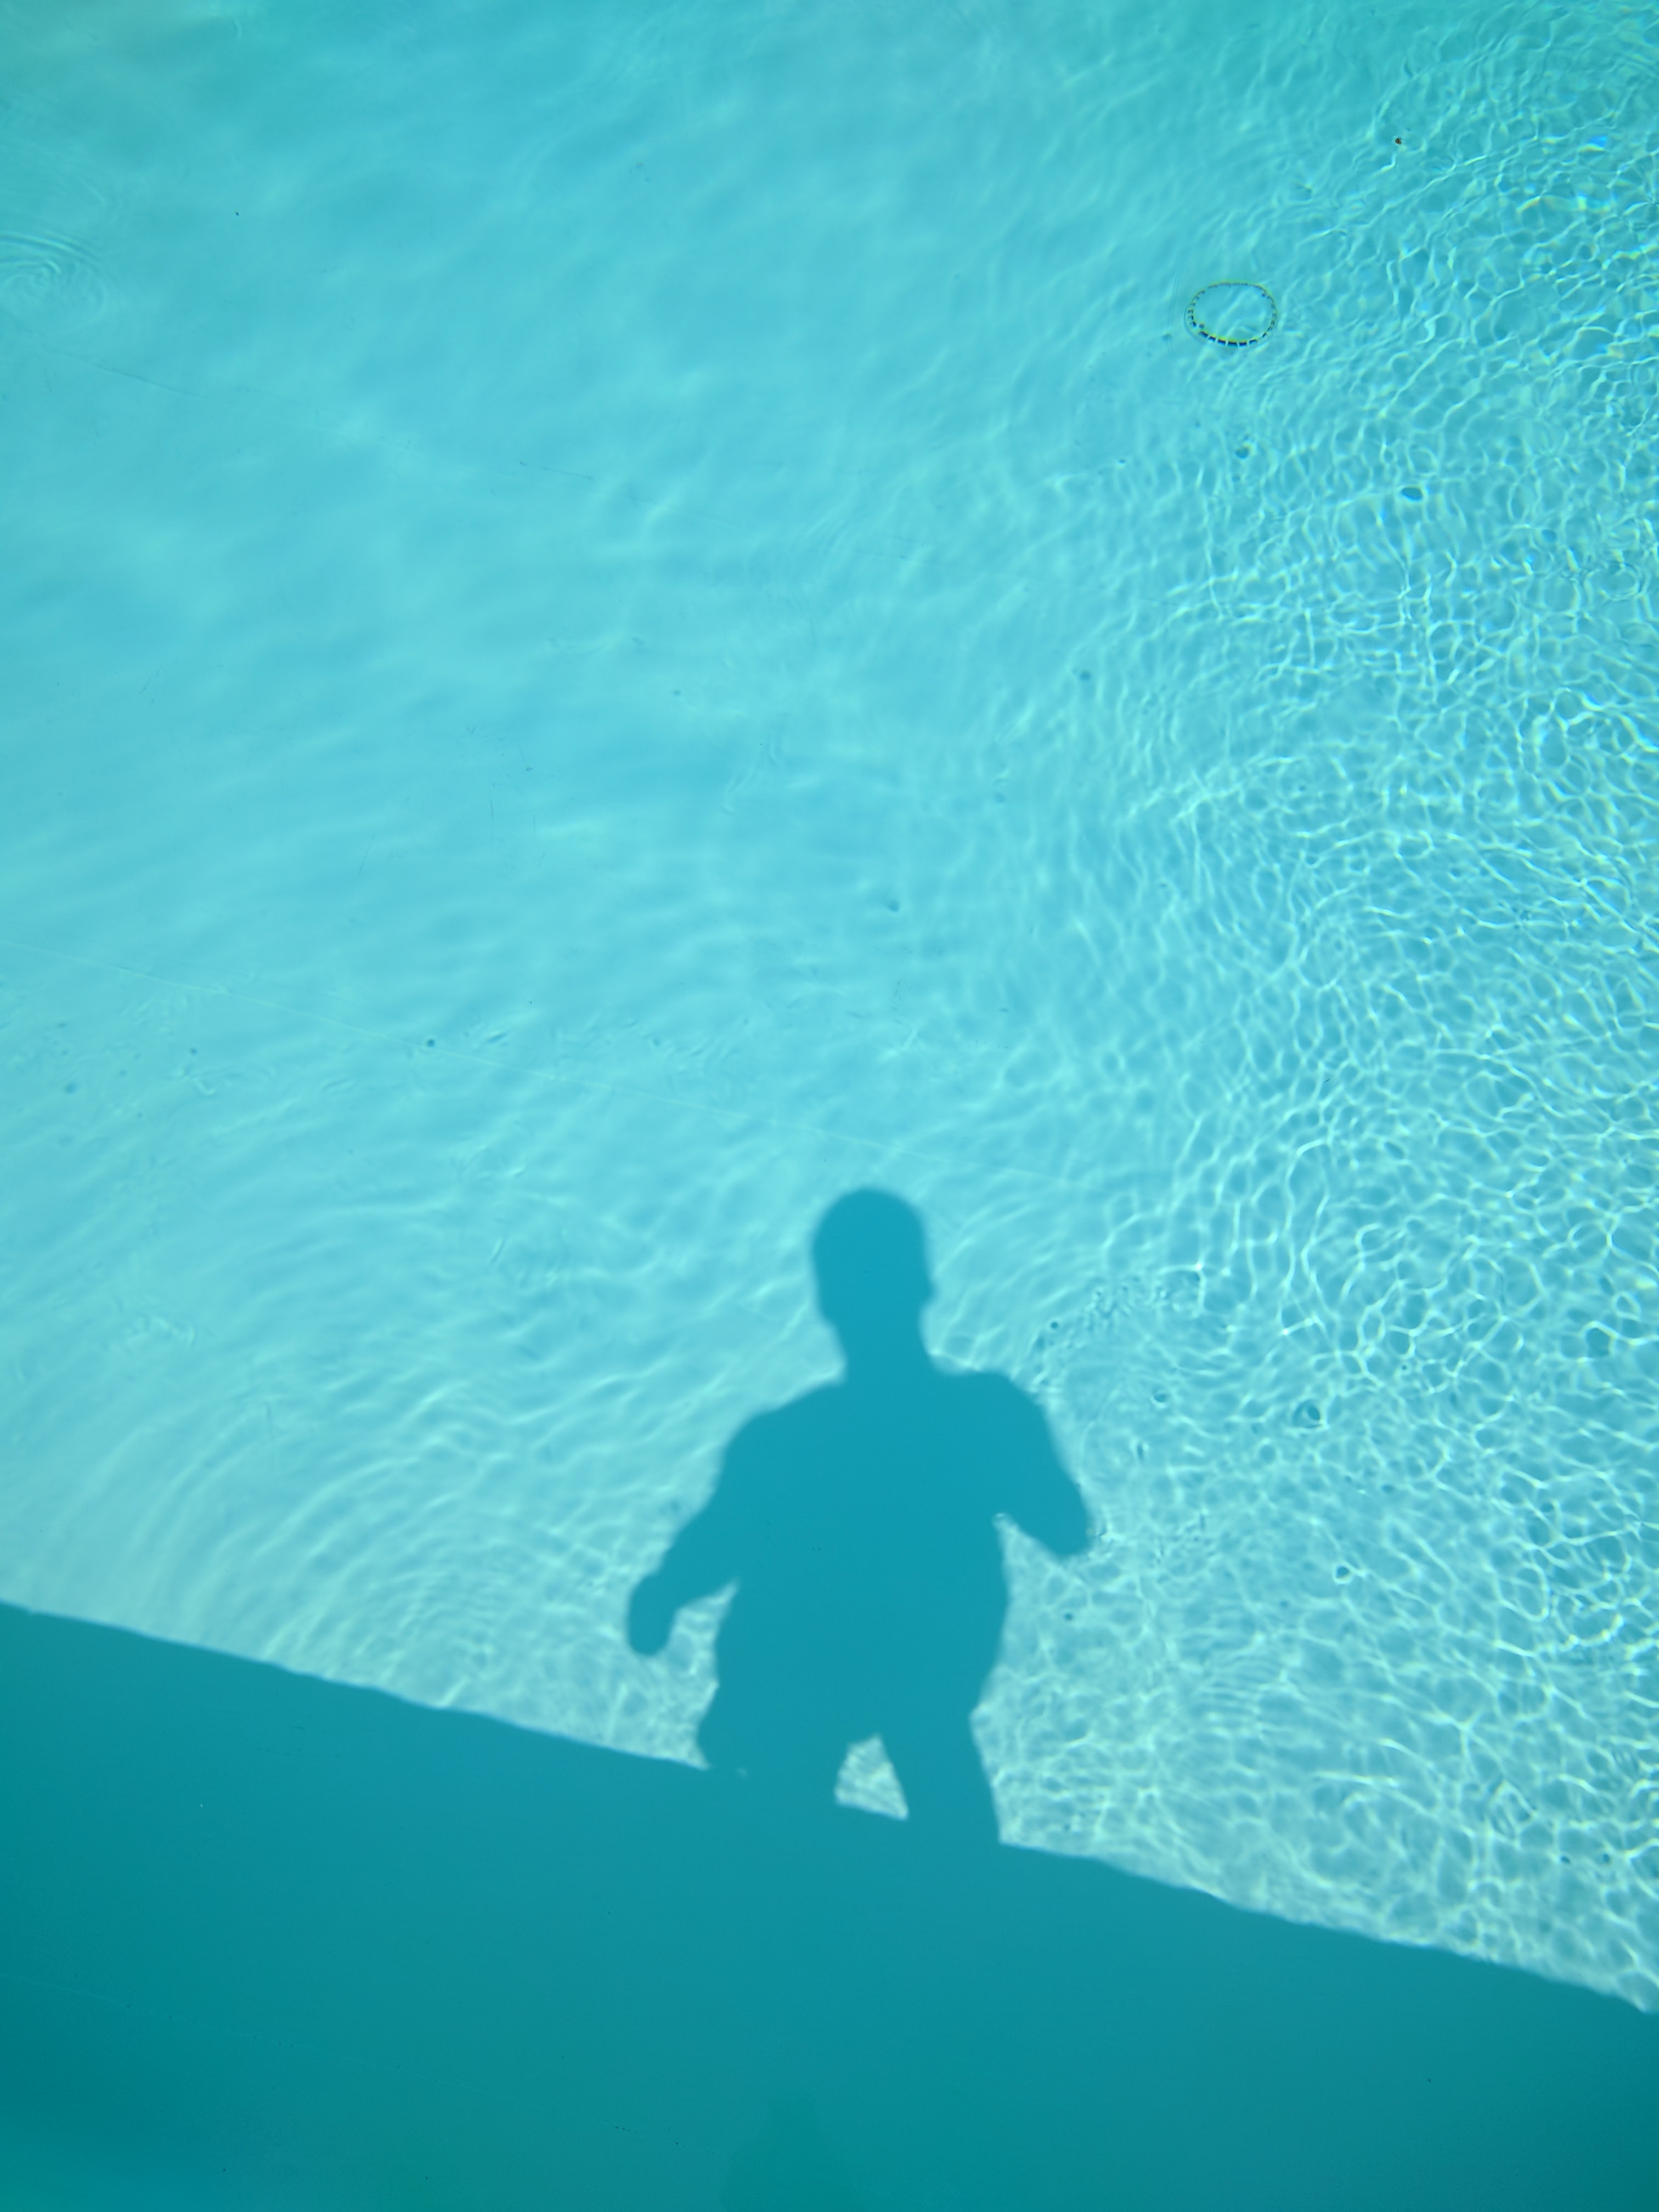 outdoor pools | Andrii Leonov on Unsplash